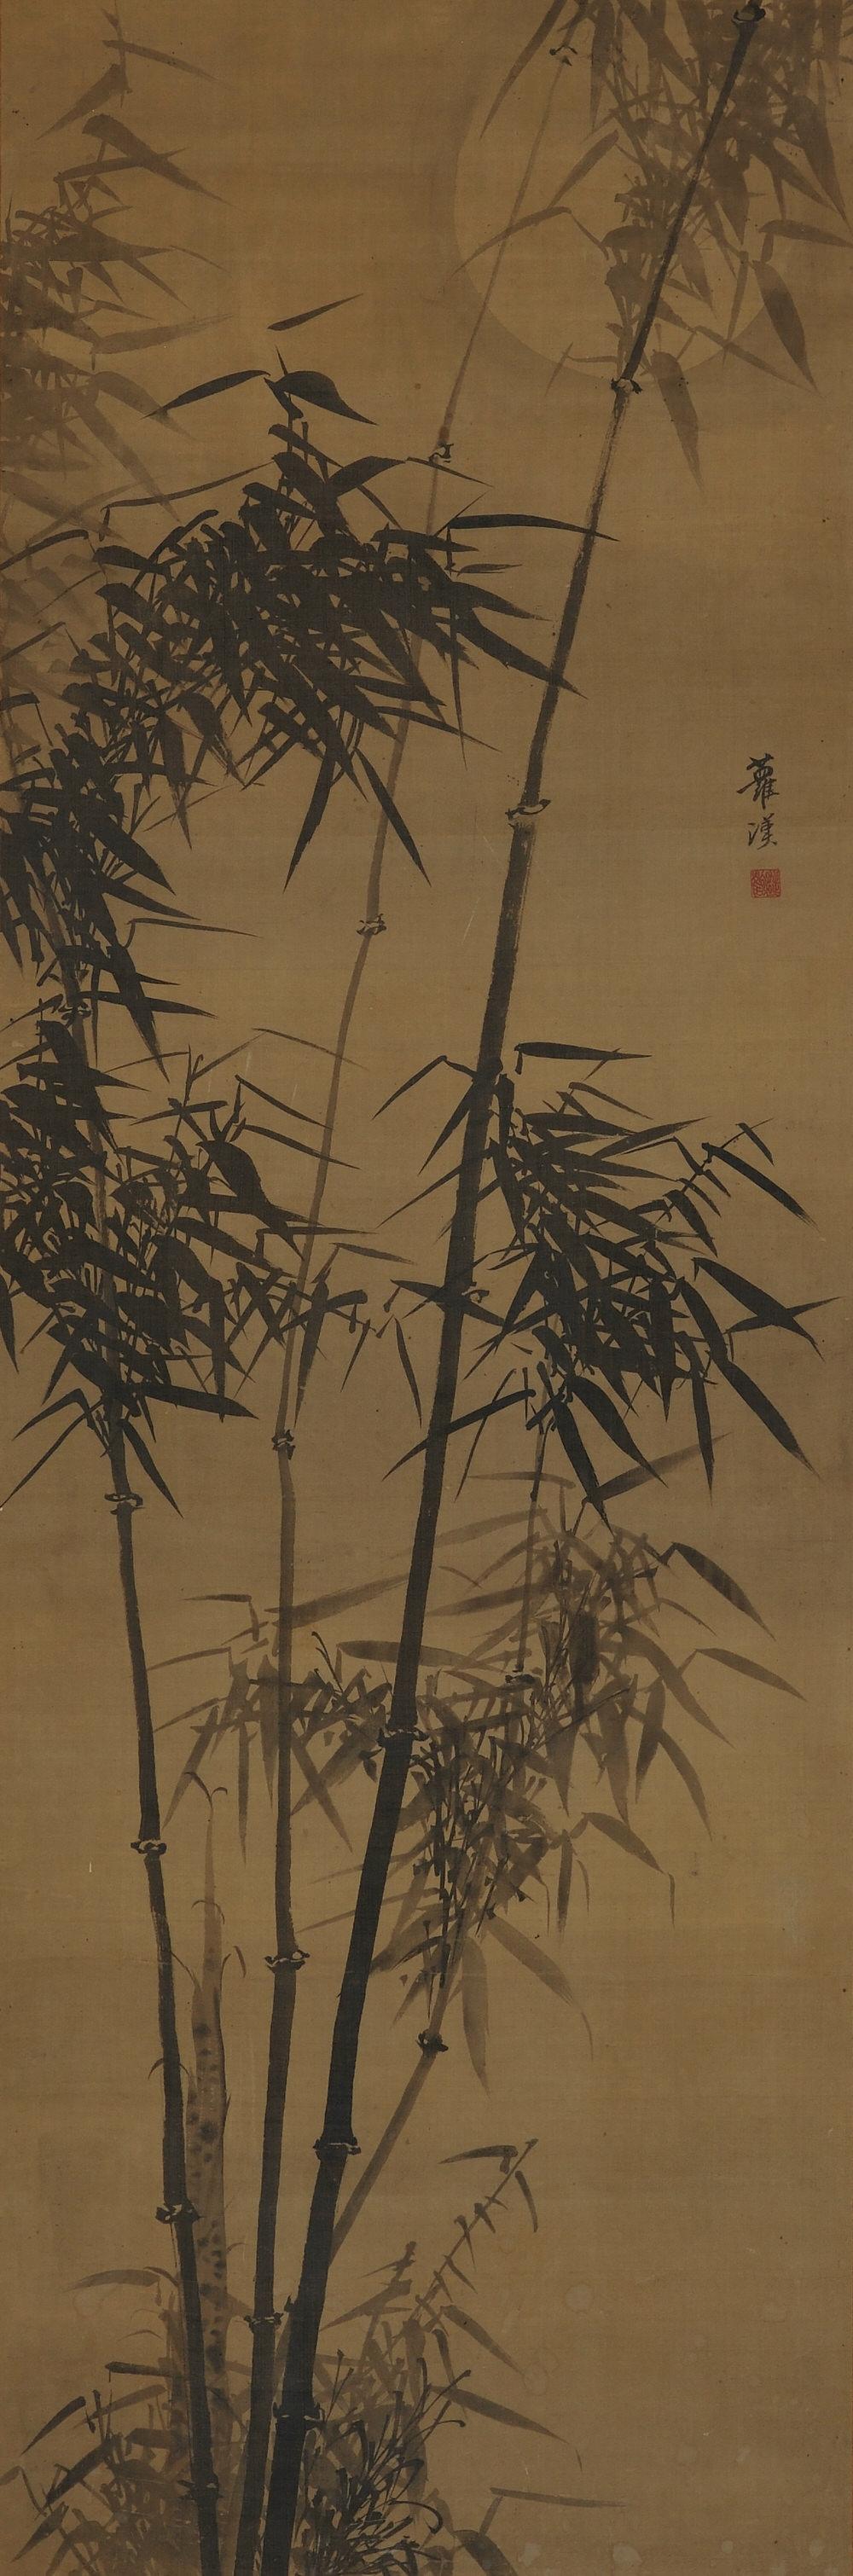 Bambou au clair de lune

Gamo Rakan (1784-1866)

Rouleau suspendu, encre sur soie.

Dimensions :

Parchemin : 201 cm x 58 cm

Image : 137 cm x 45 cm

Dans cette œuvre du début du XIXe siècle de Silhouette, un léger lavis d'encre appliqué